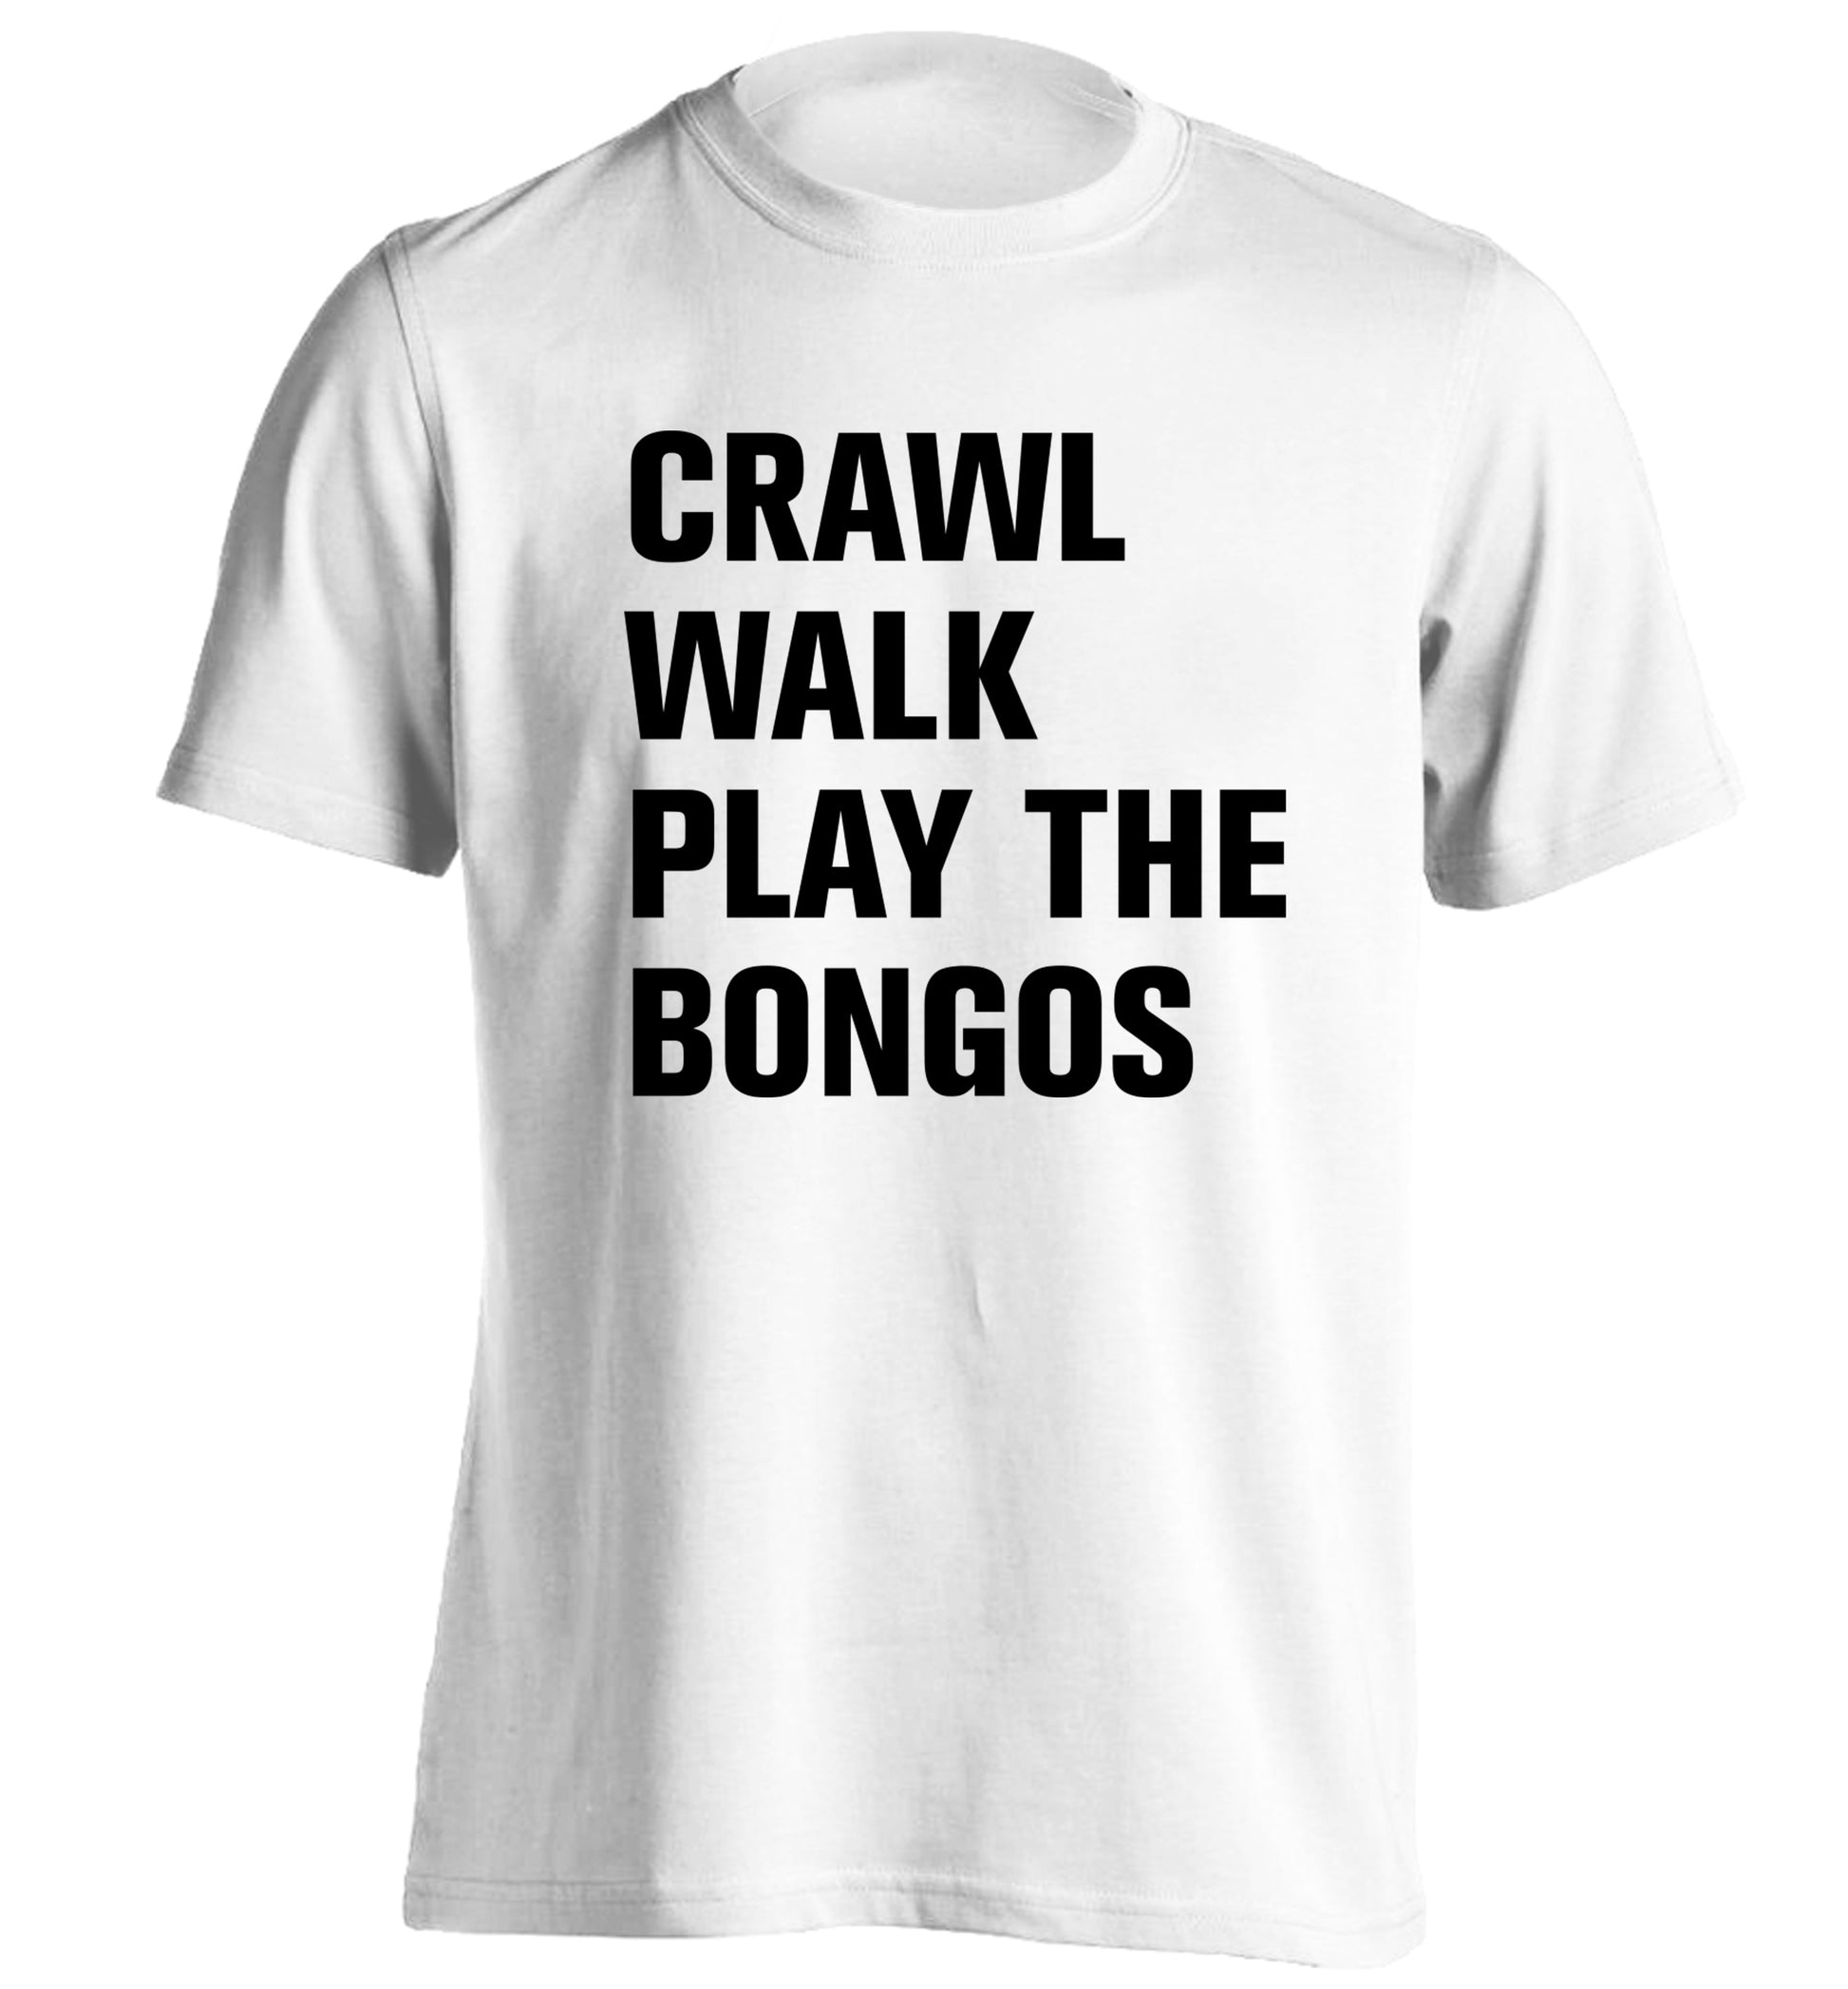 Crawl Walk Play Bongos adults unisex white Tshirt 2XL